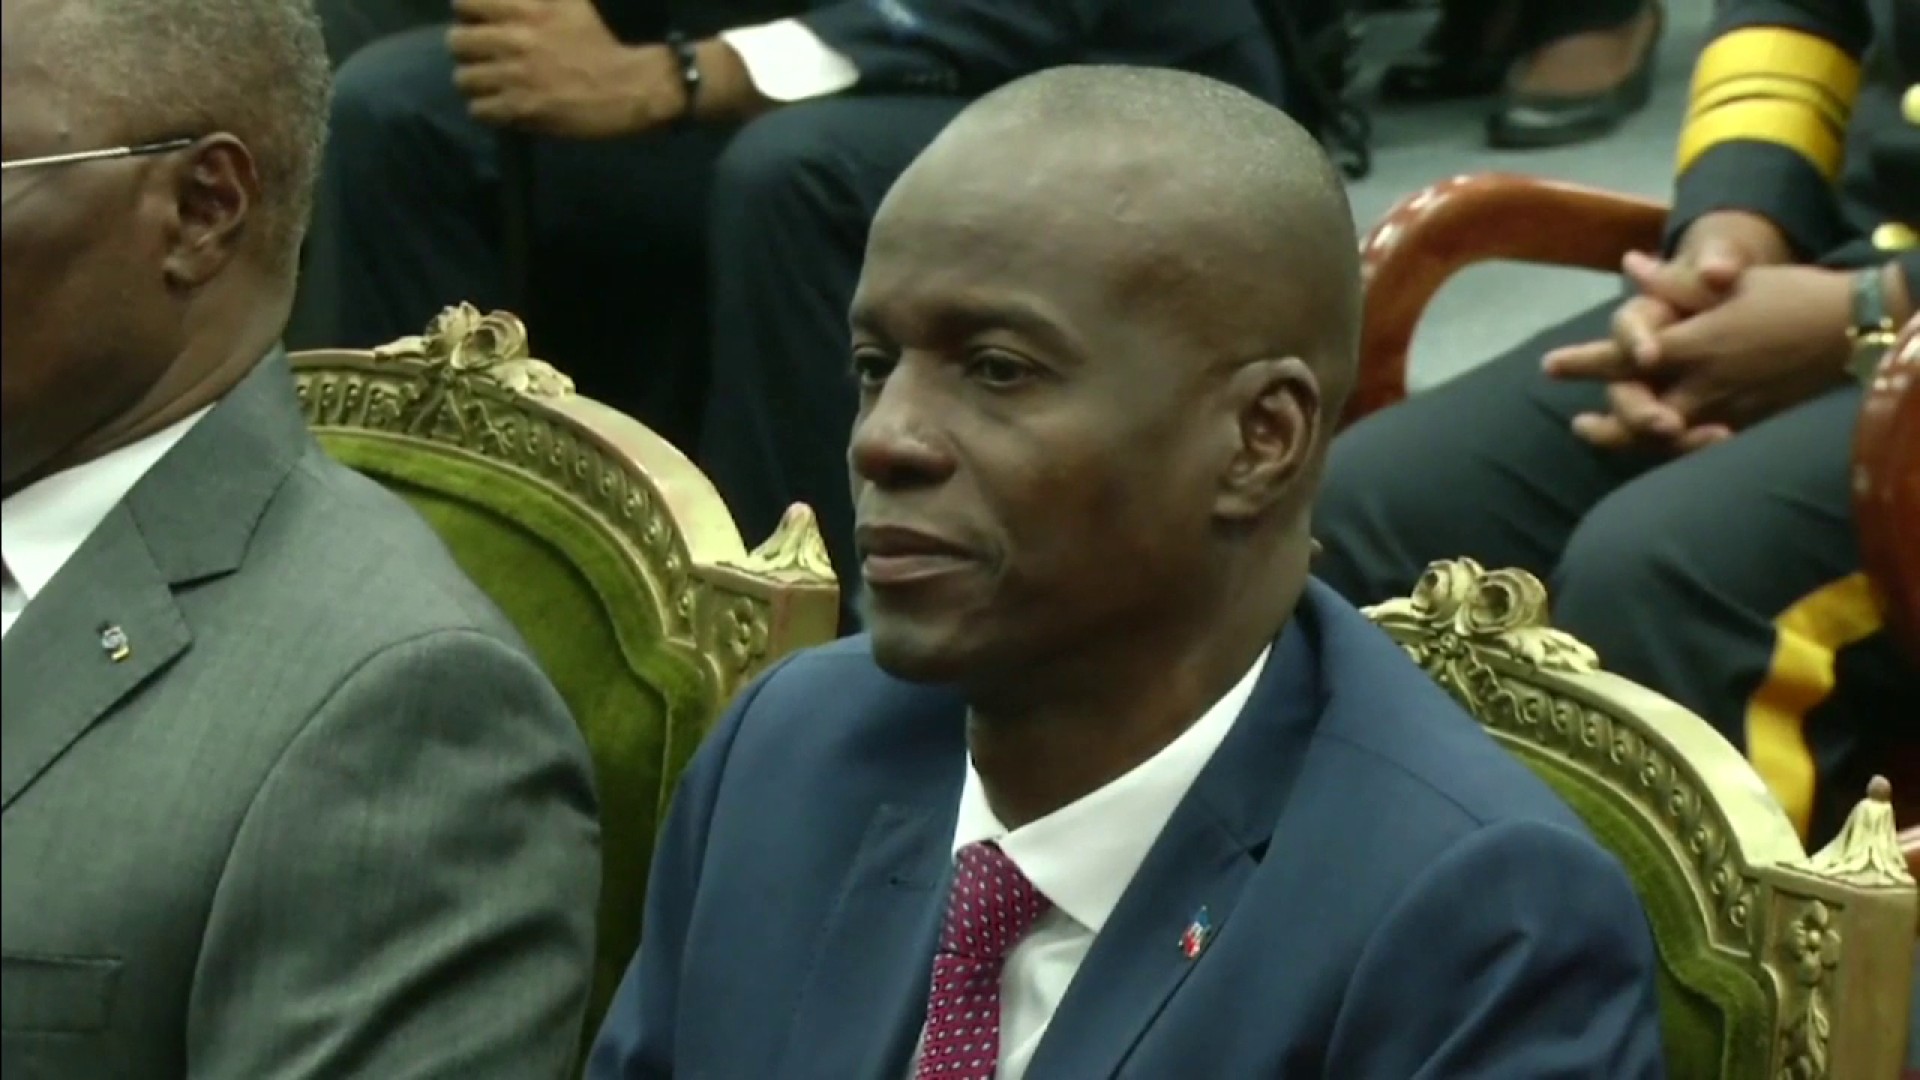 Haiti president jovenel moïse